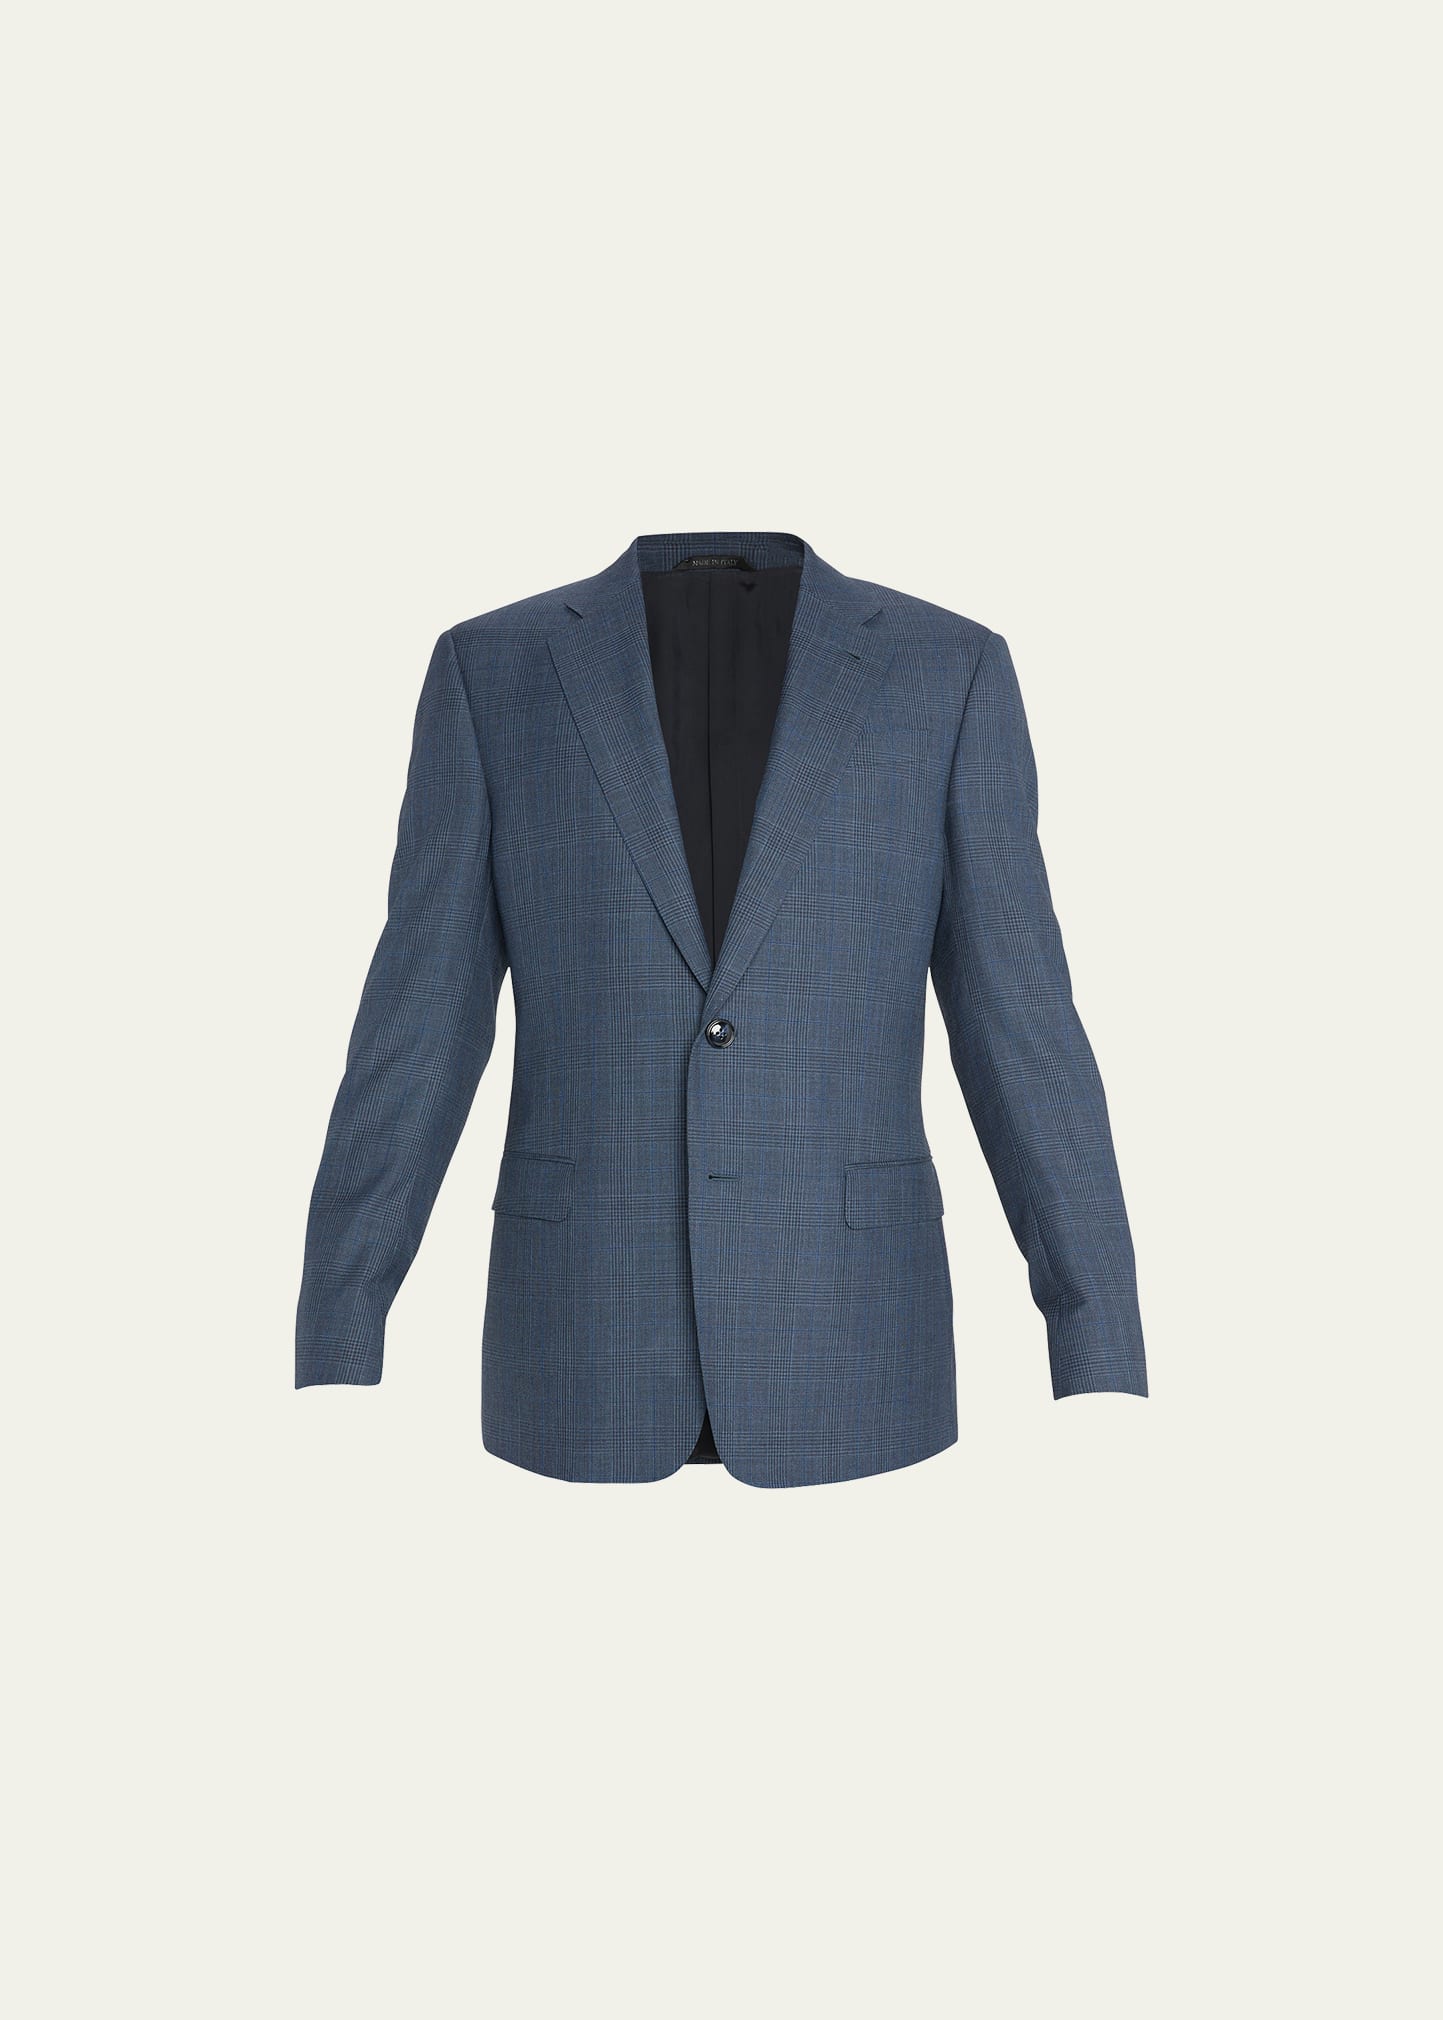 Giorgio Armani Men's Tonal Plaid Wool Suit In Multi